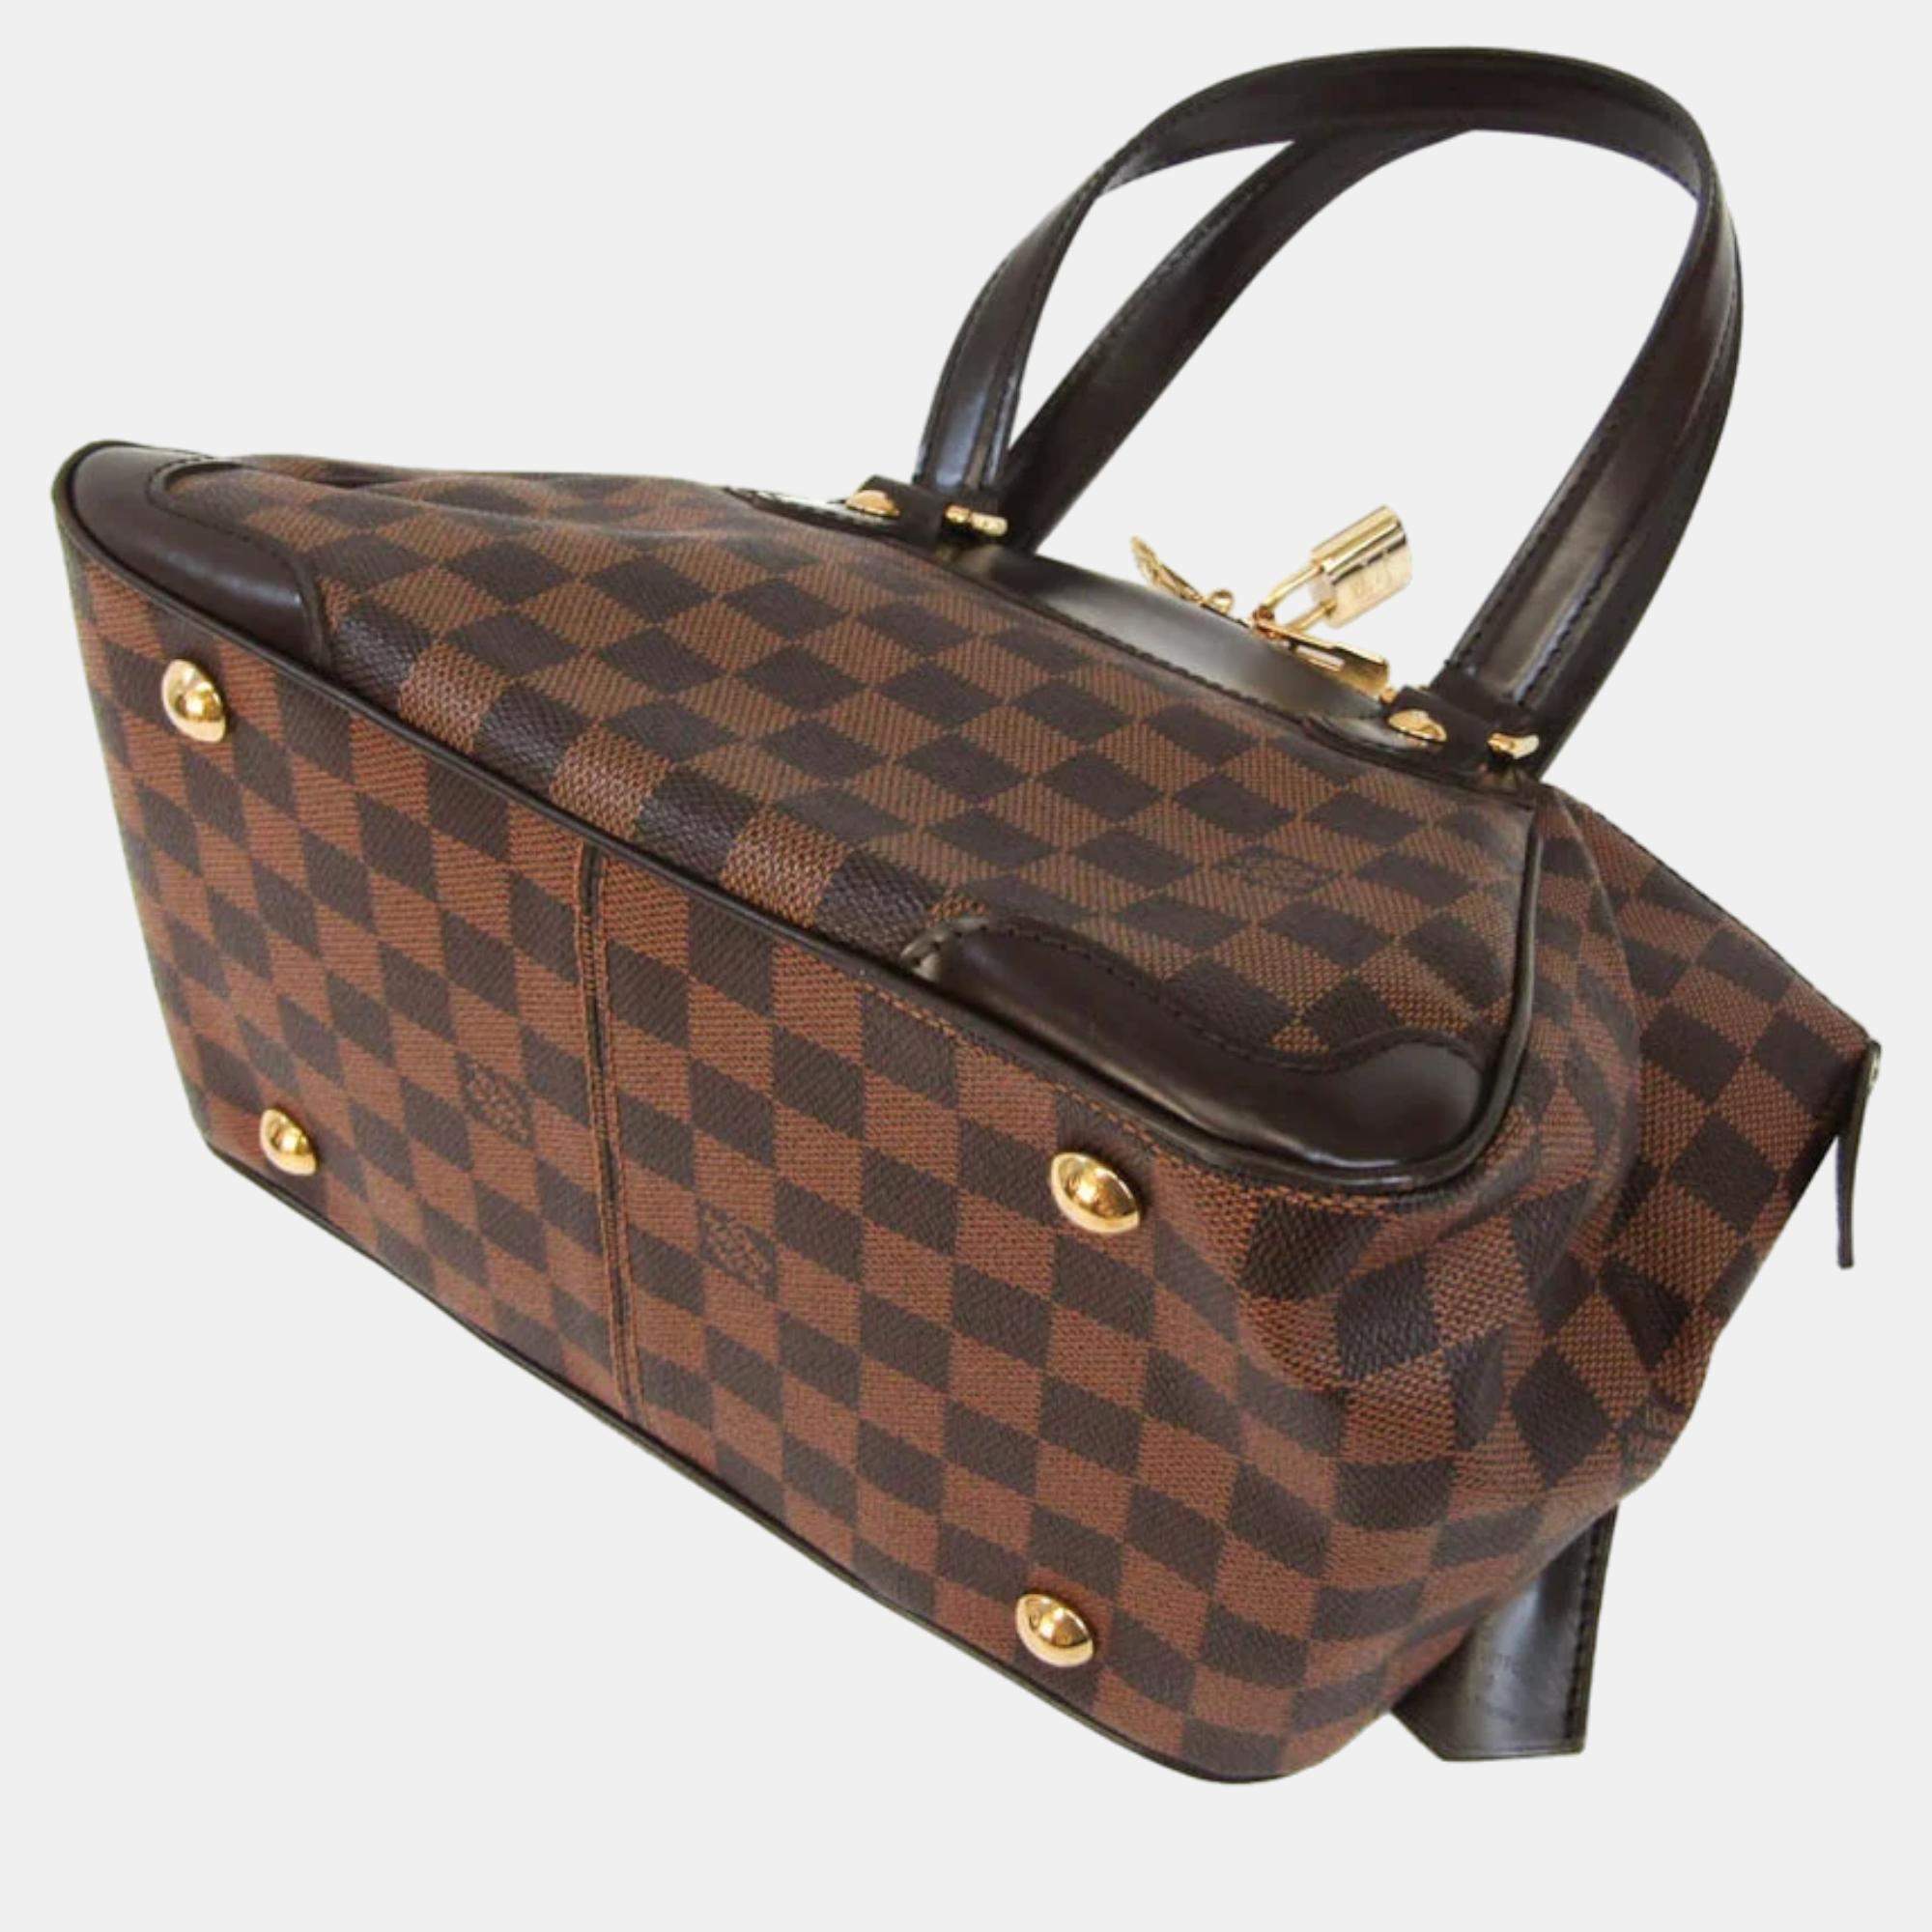 Louis Vuitton Damier Ebene Verona PM Small Bag